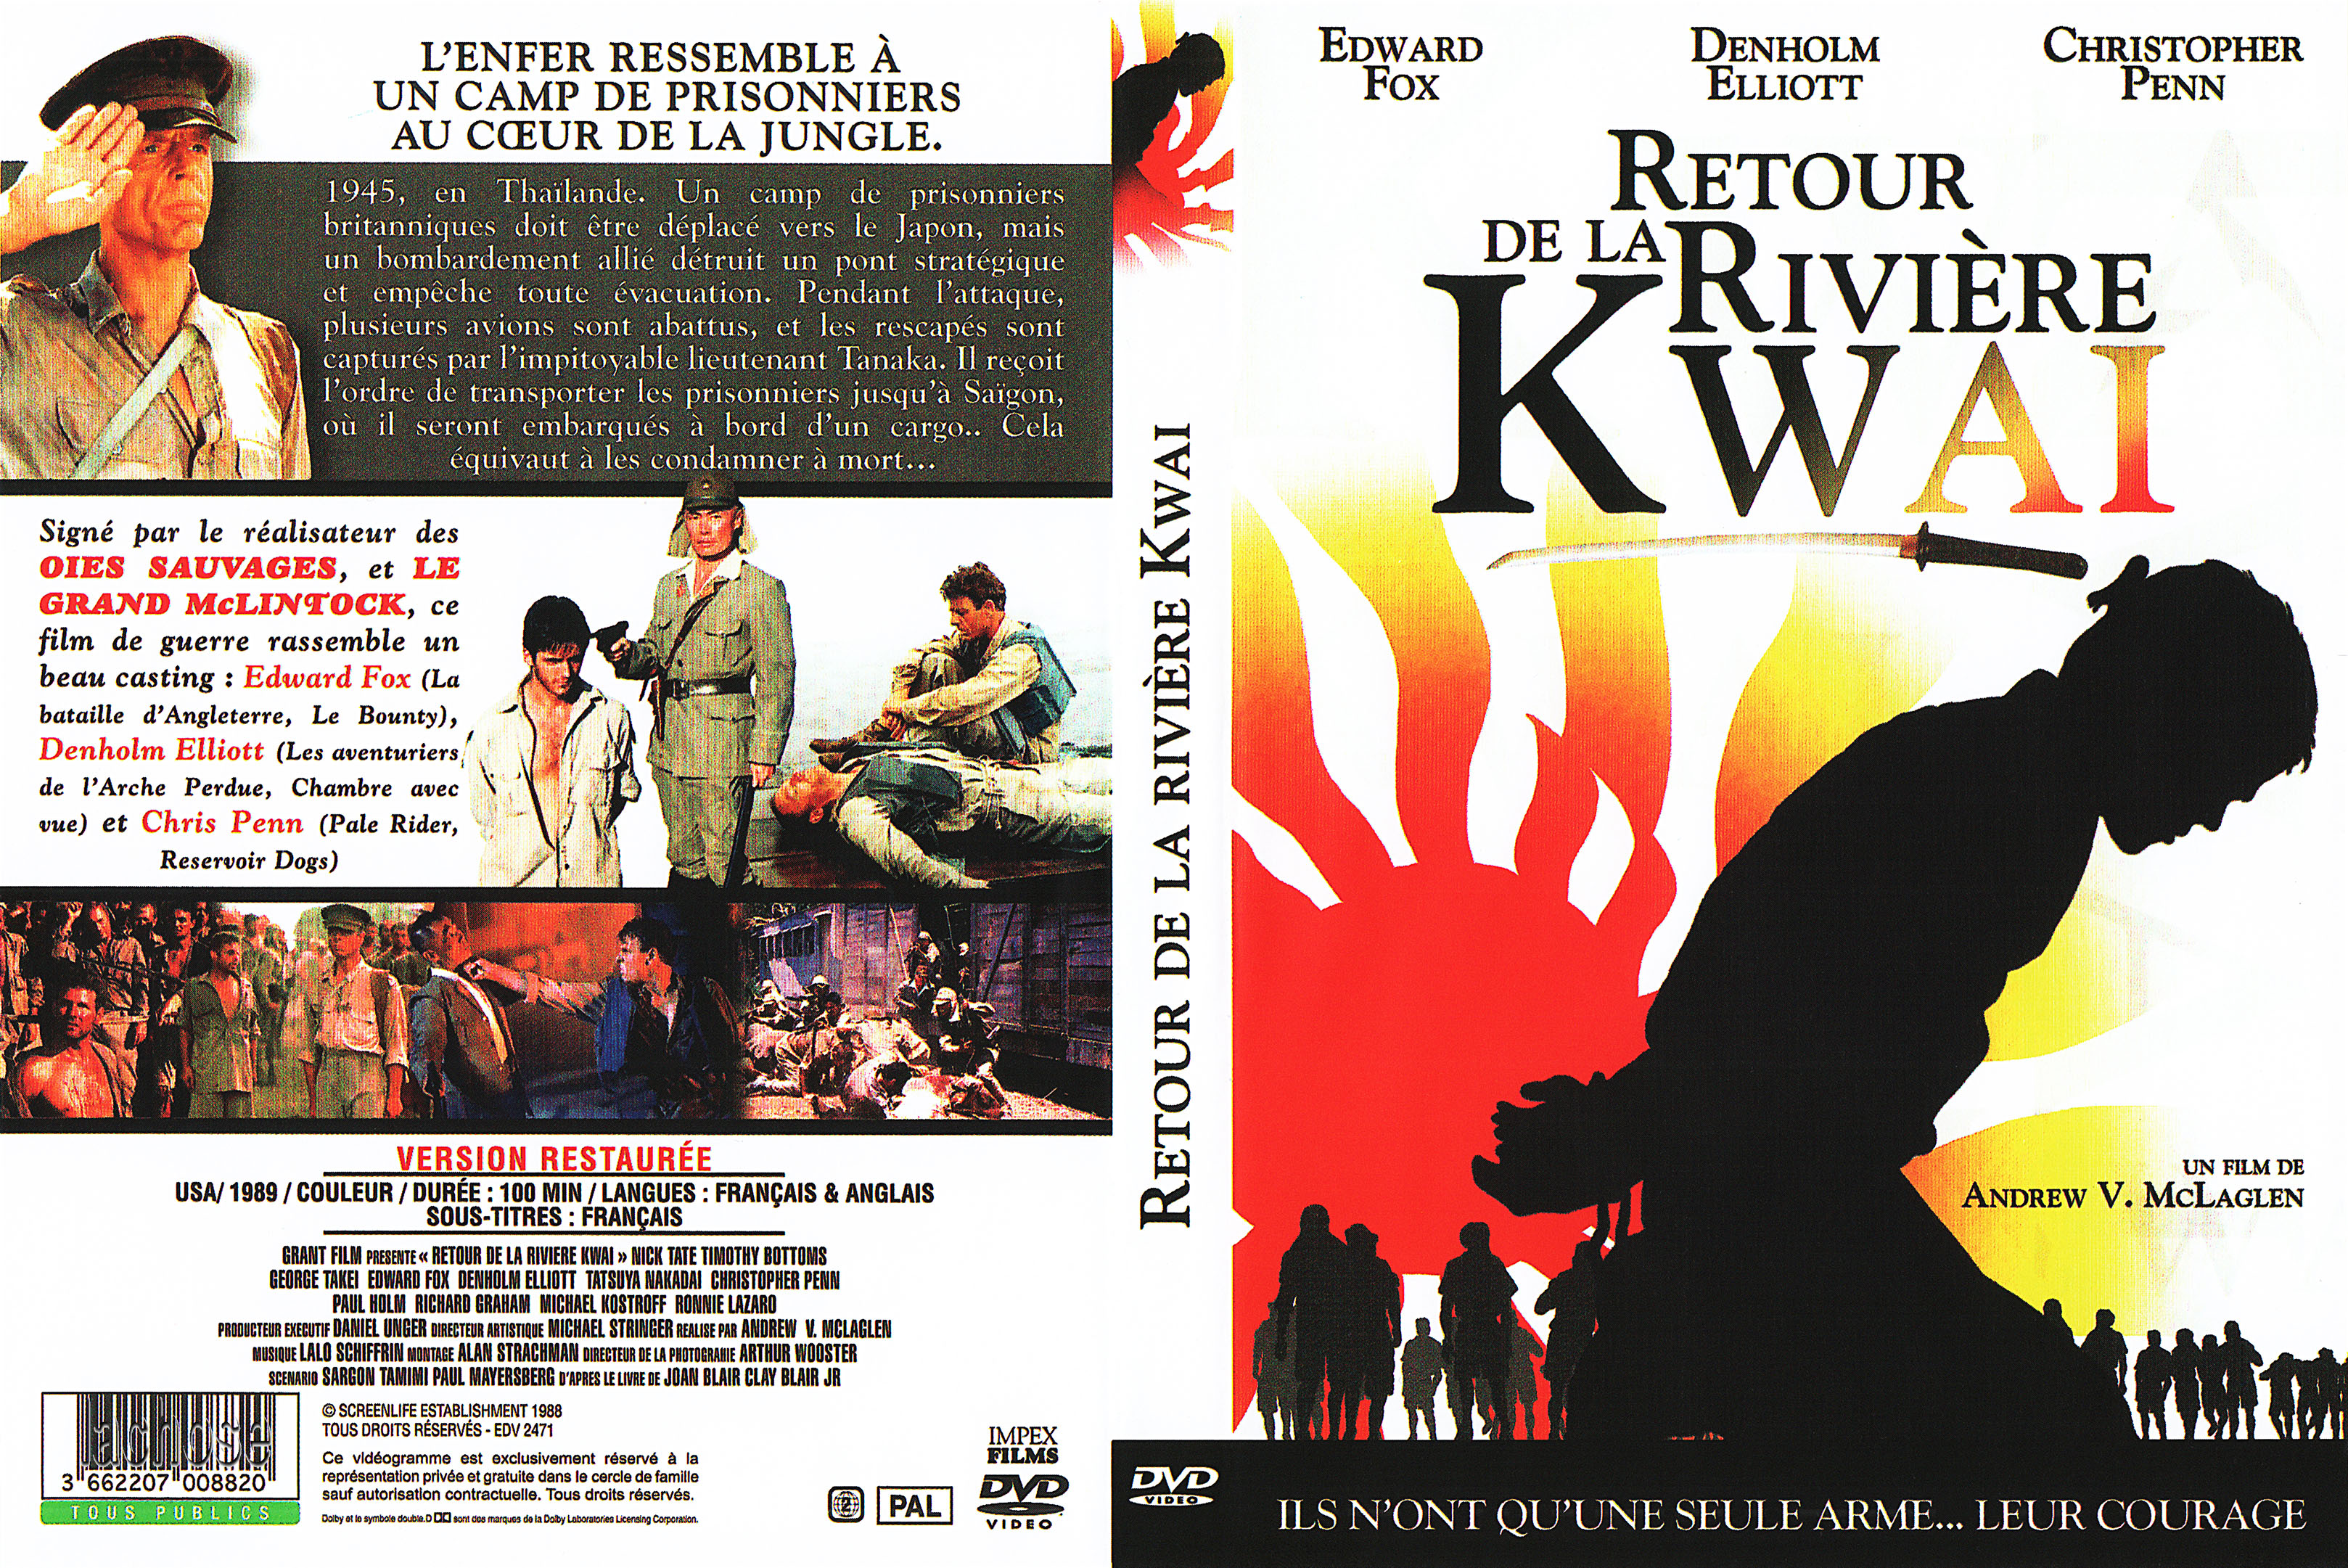 Jaquette DVD Retour de la rivire kwai